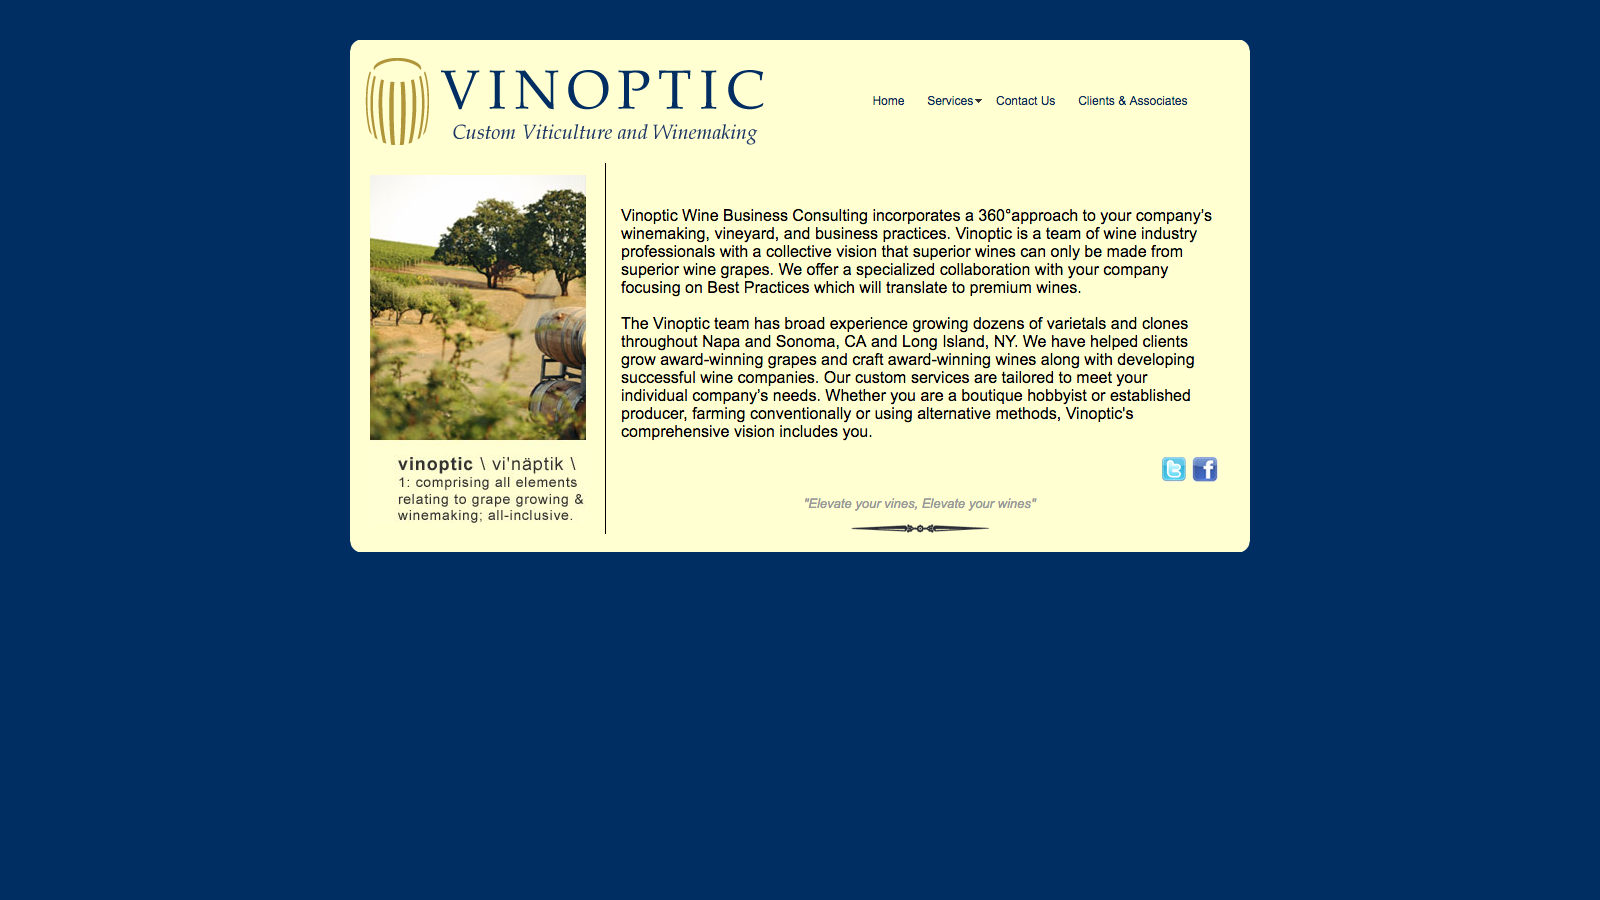 Vinoptic's Old Website